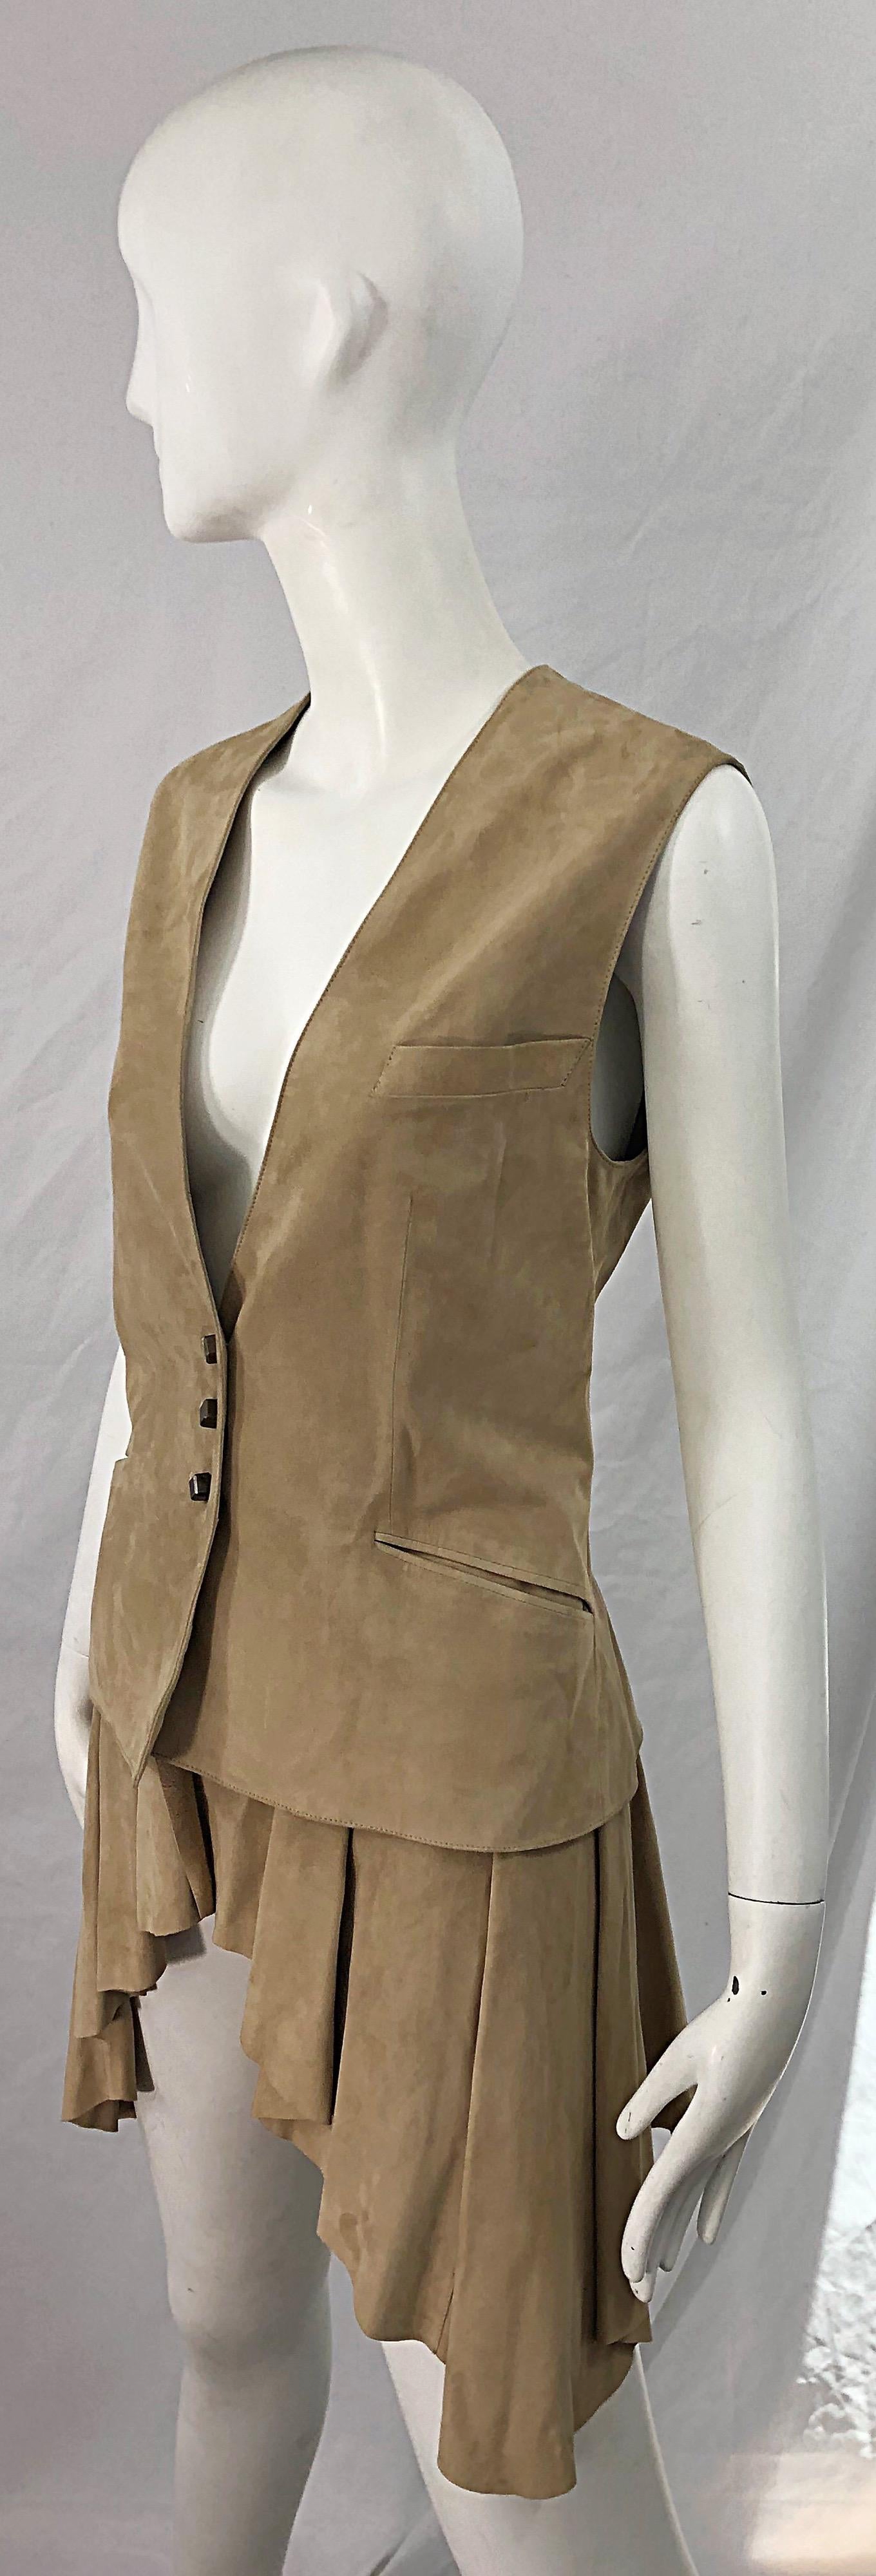 Brown Emanuel Ungaro 1990s Tan Suede Leather Size 42 / 8 Dip Hem Vintage 90s Vest Top For Sale